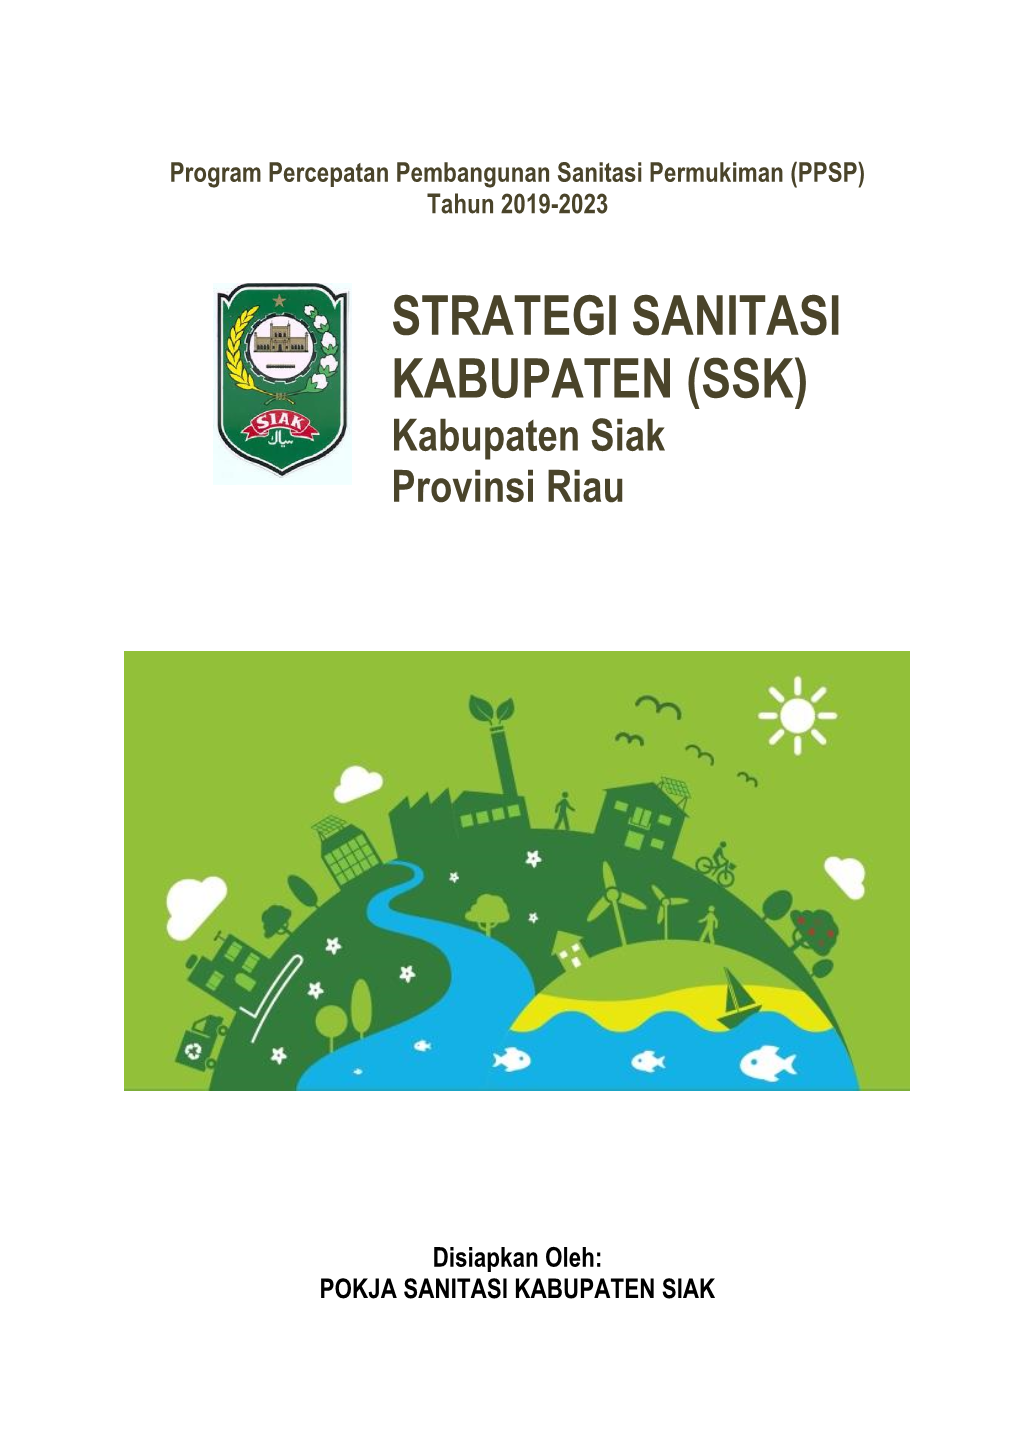 STRATEGI SANITASI KABUPATEN (SSK) Kabupaten Siak Provinsi Riau